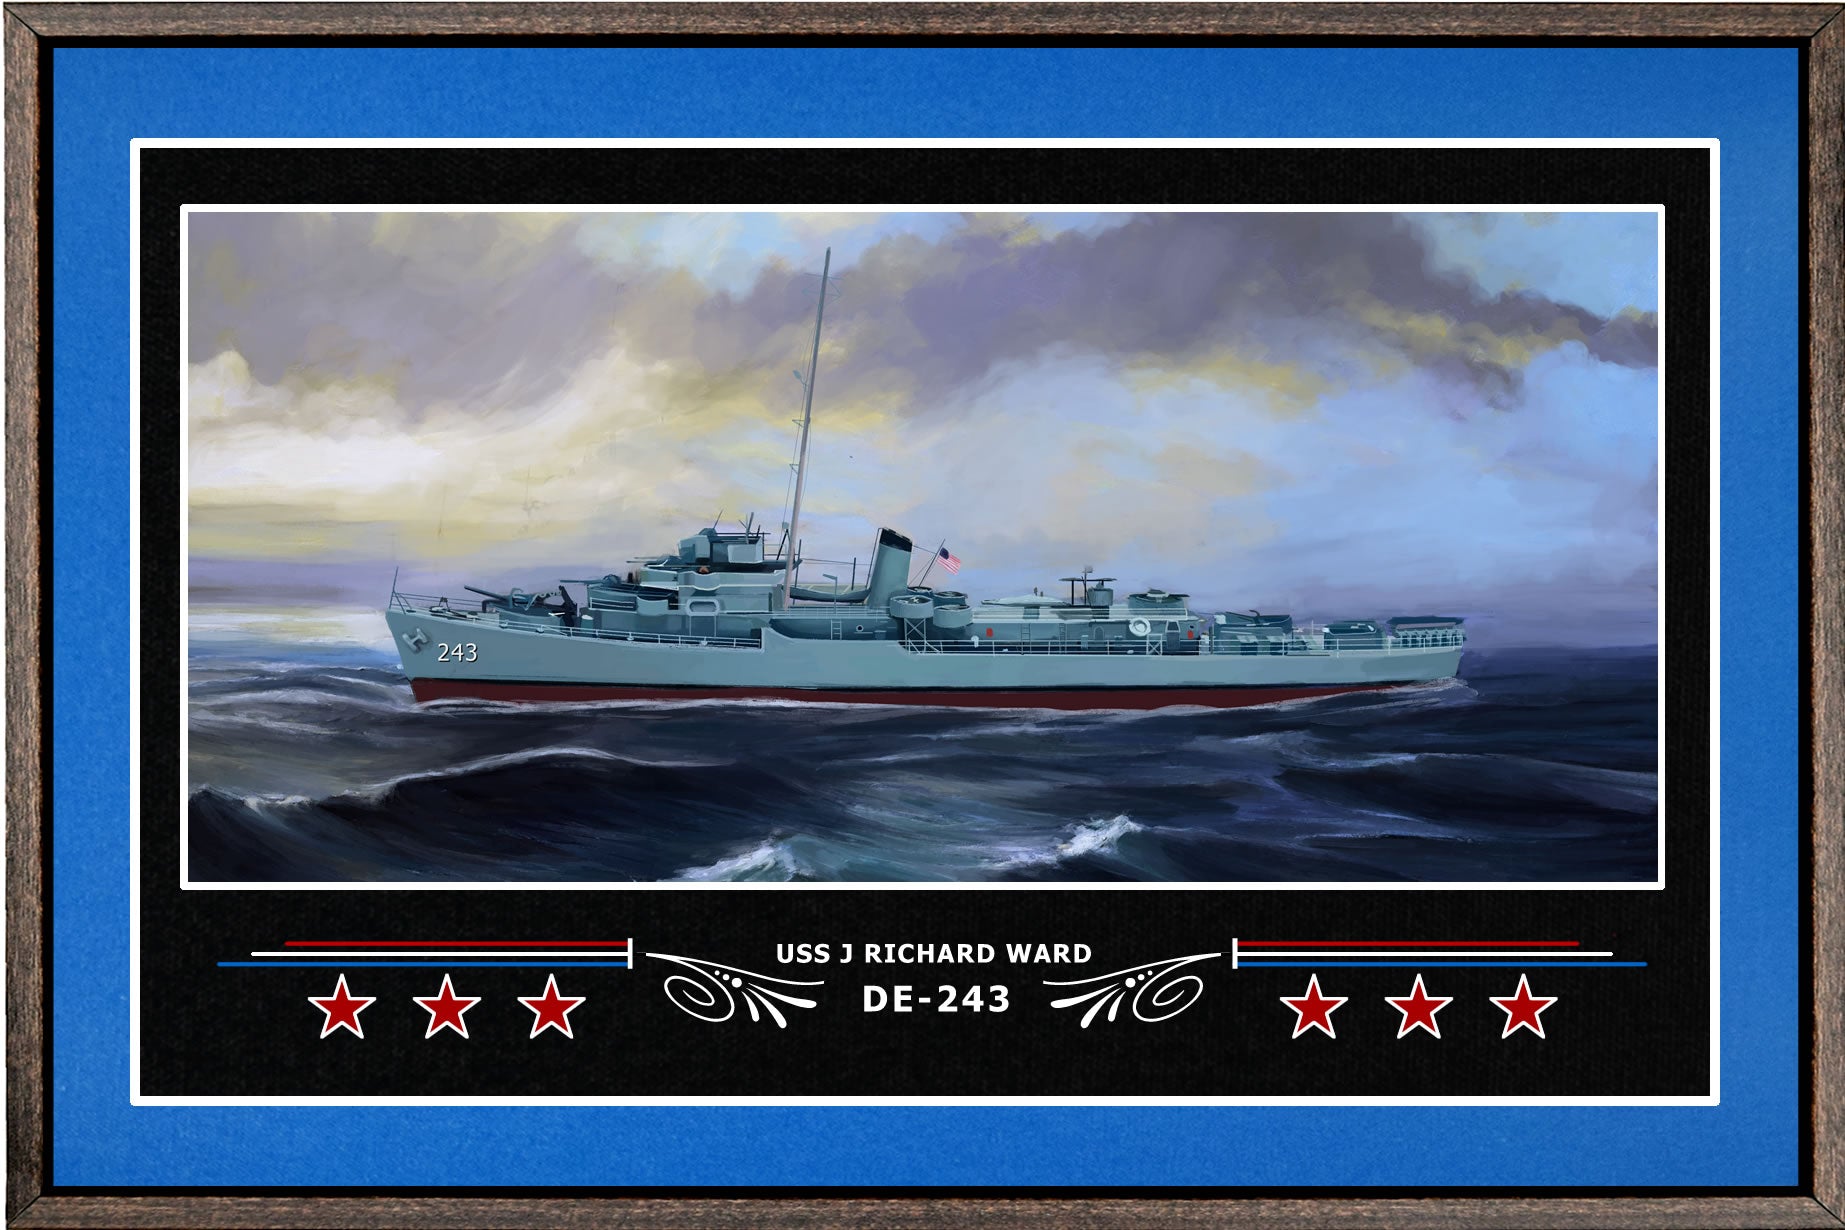 USS J RICHARD WARD DE 243 BOX FRAMED CANVAS ART BLUE